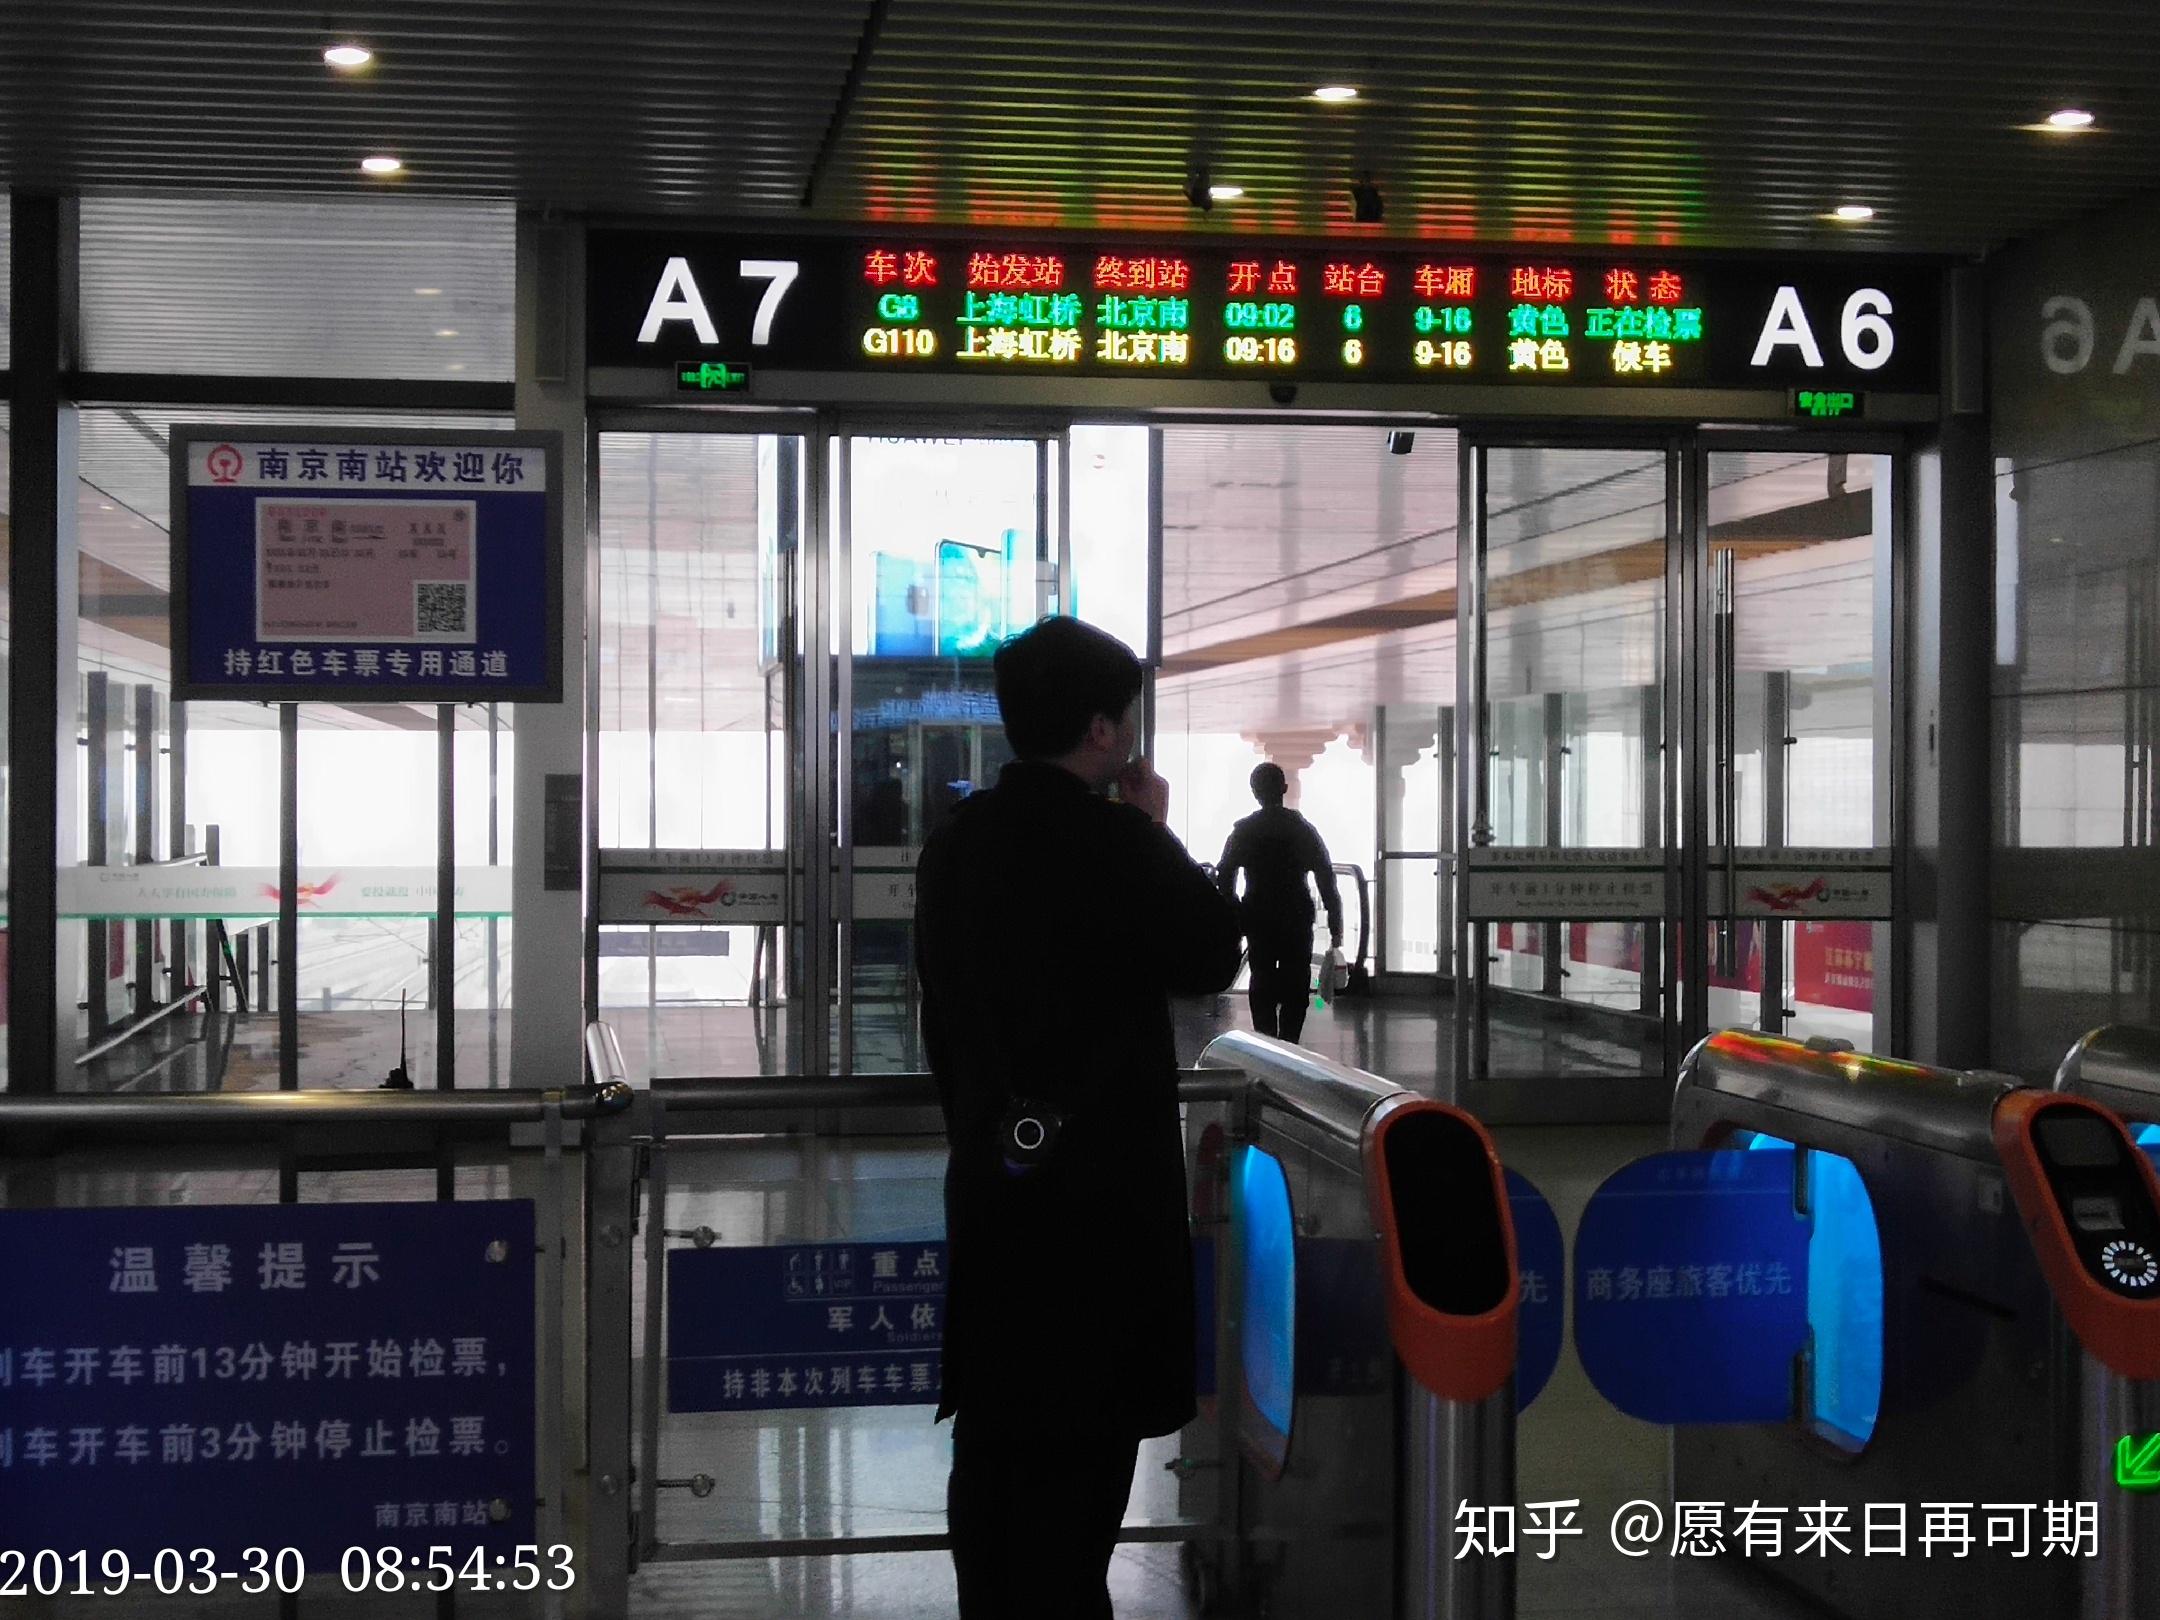 南京南站a6 a7检票口候车显示屏g110次小盘与g8次列车合影g110次小盘